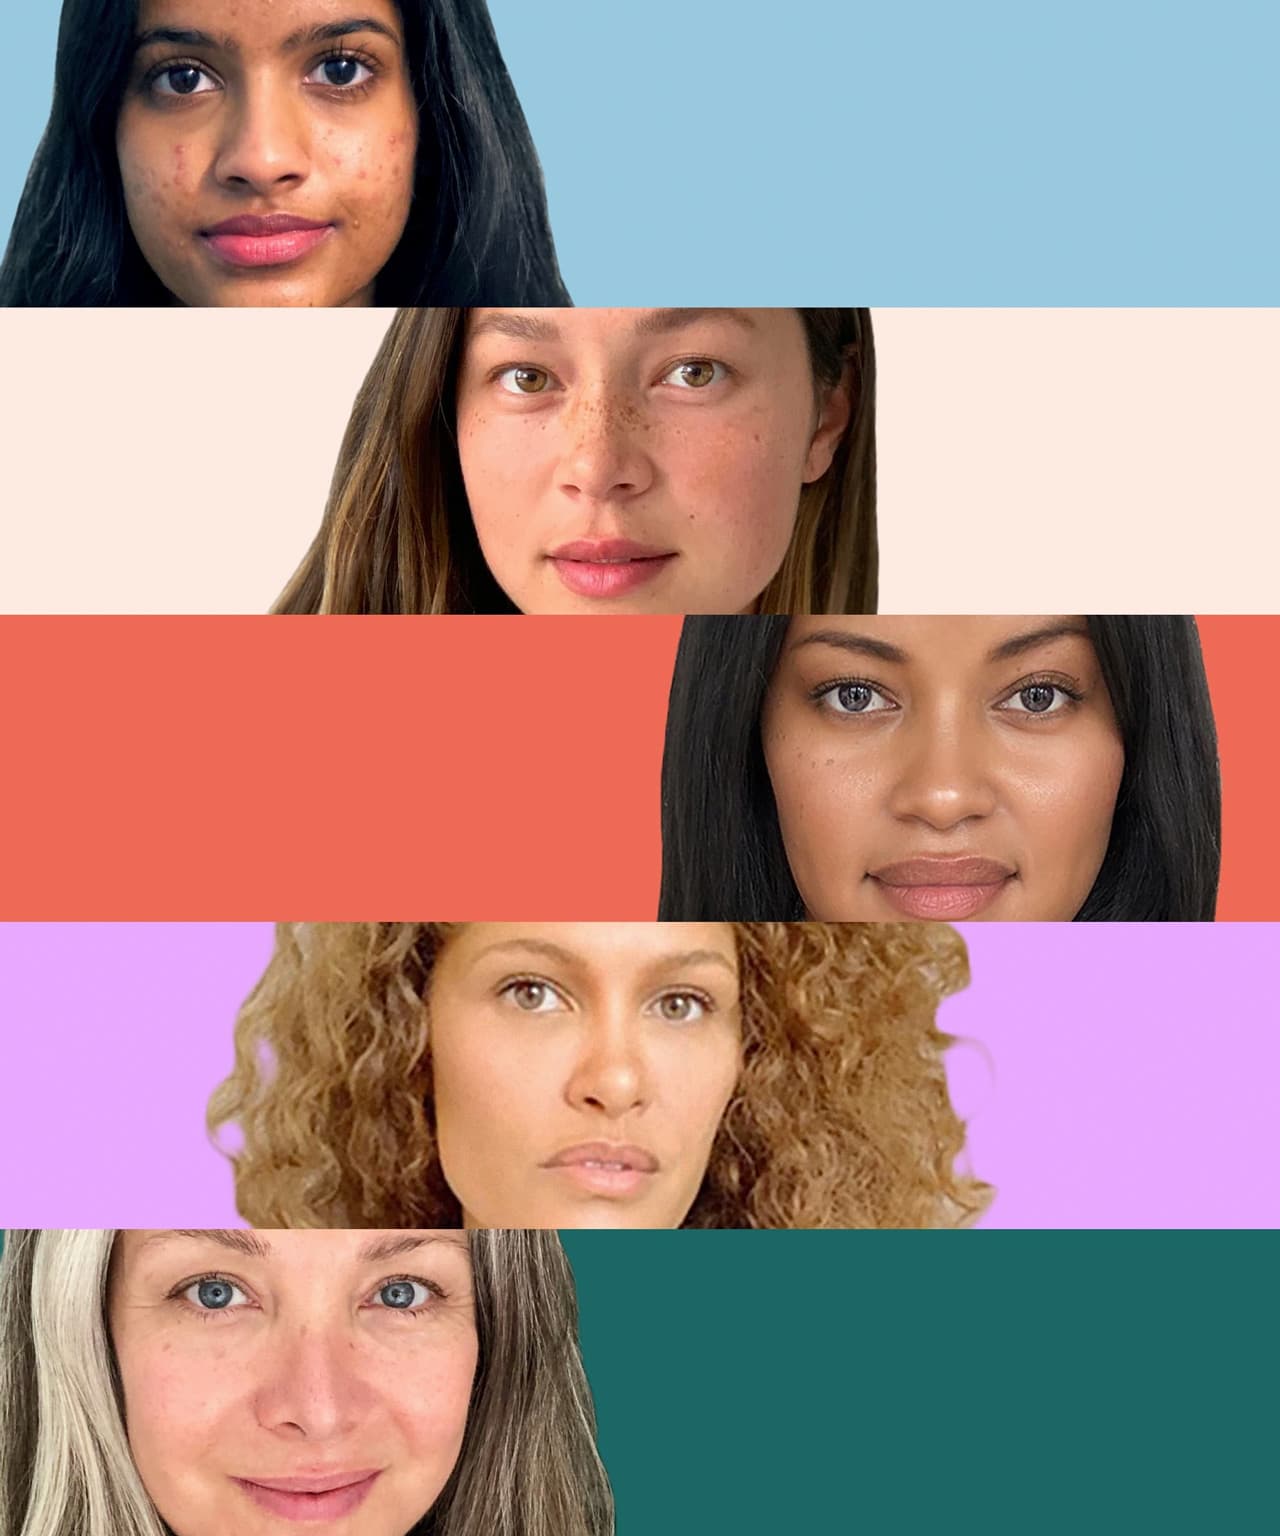 Image of five women